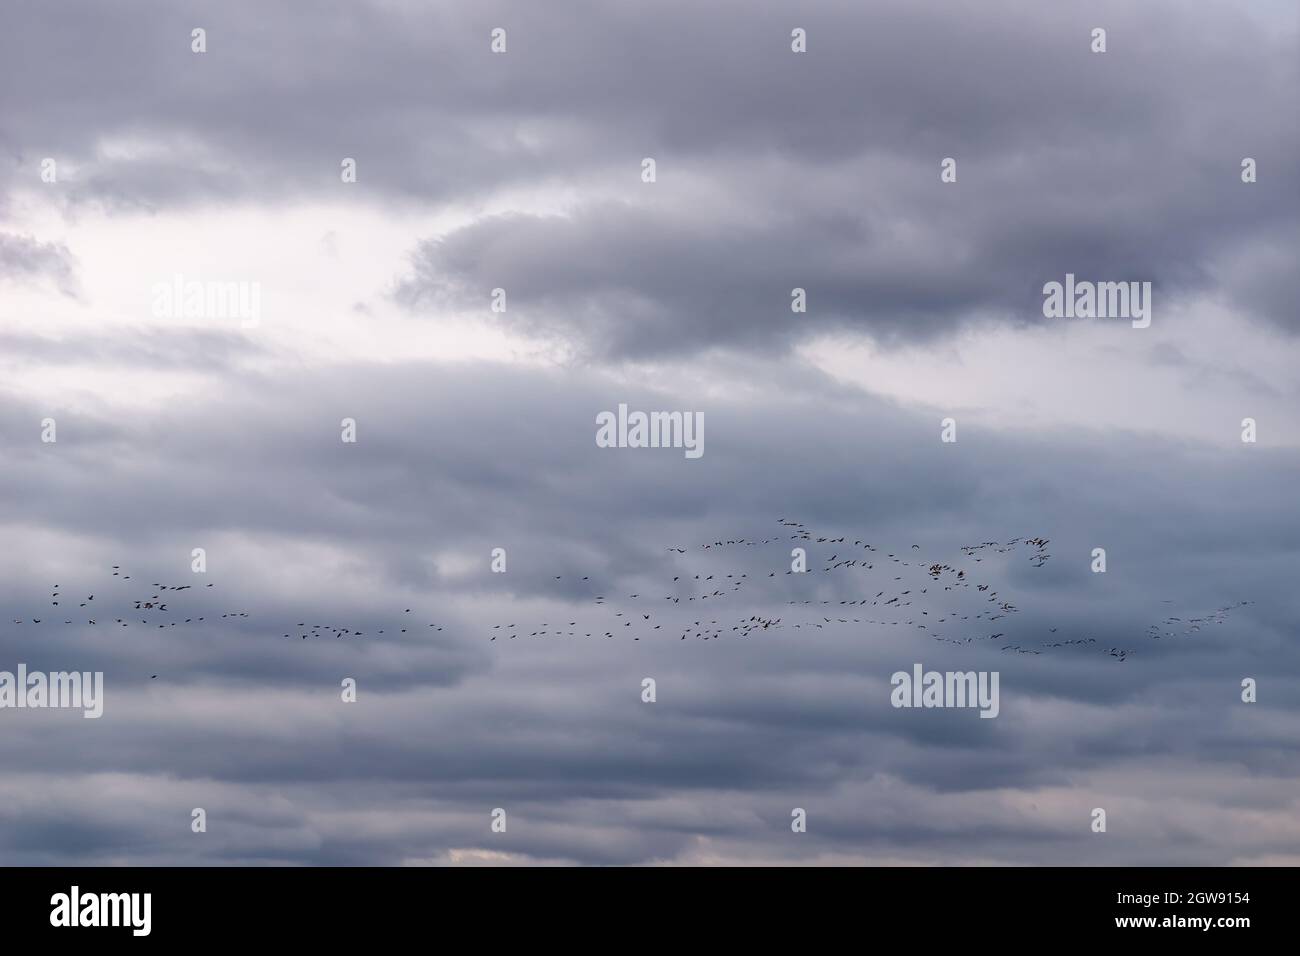 Aves en formación de vuelo haciendo su migración estacional anual contra el cielo gris del otoño. Rebaño de aves silvestres volando en lo alto del cielo de otoño. Foto de stock